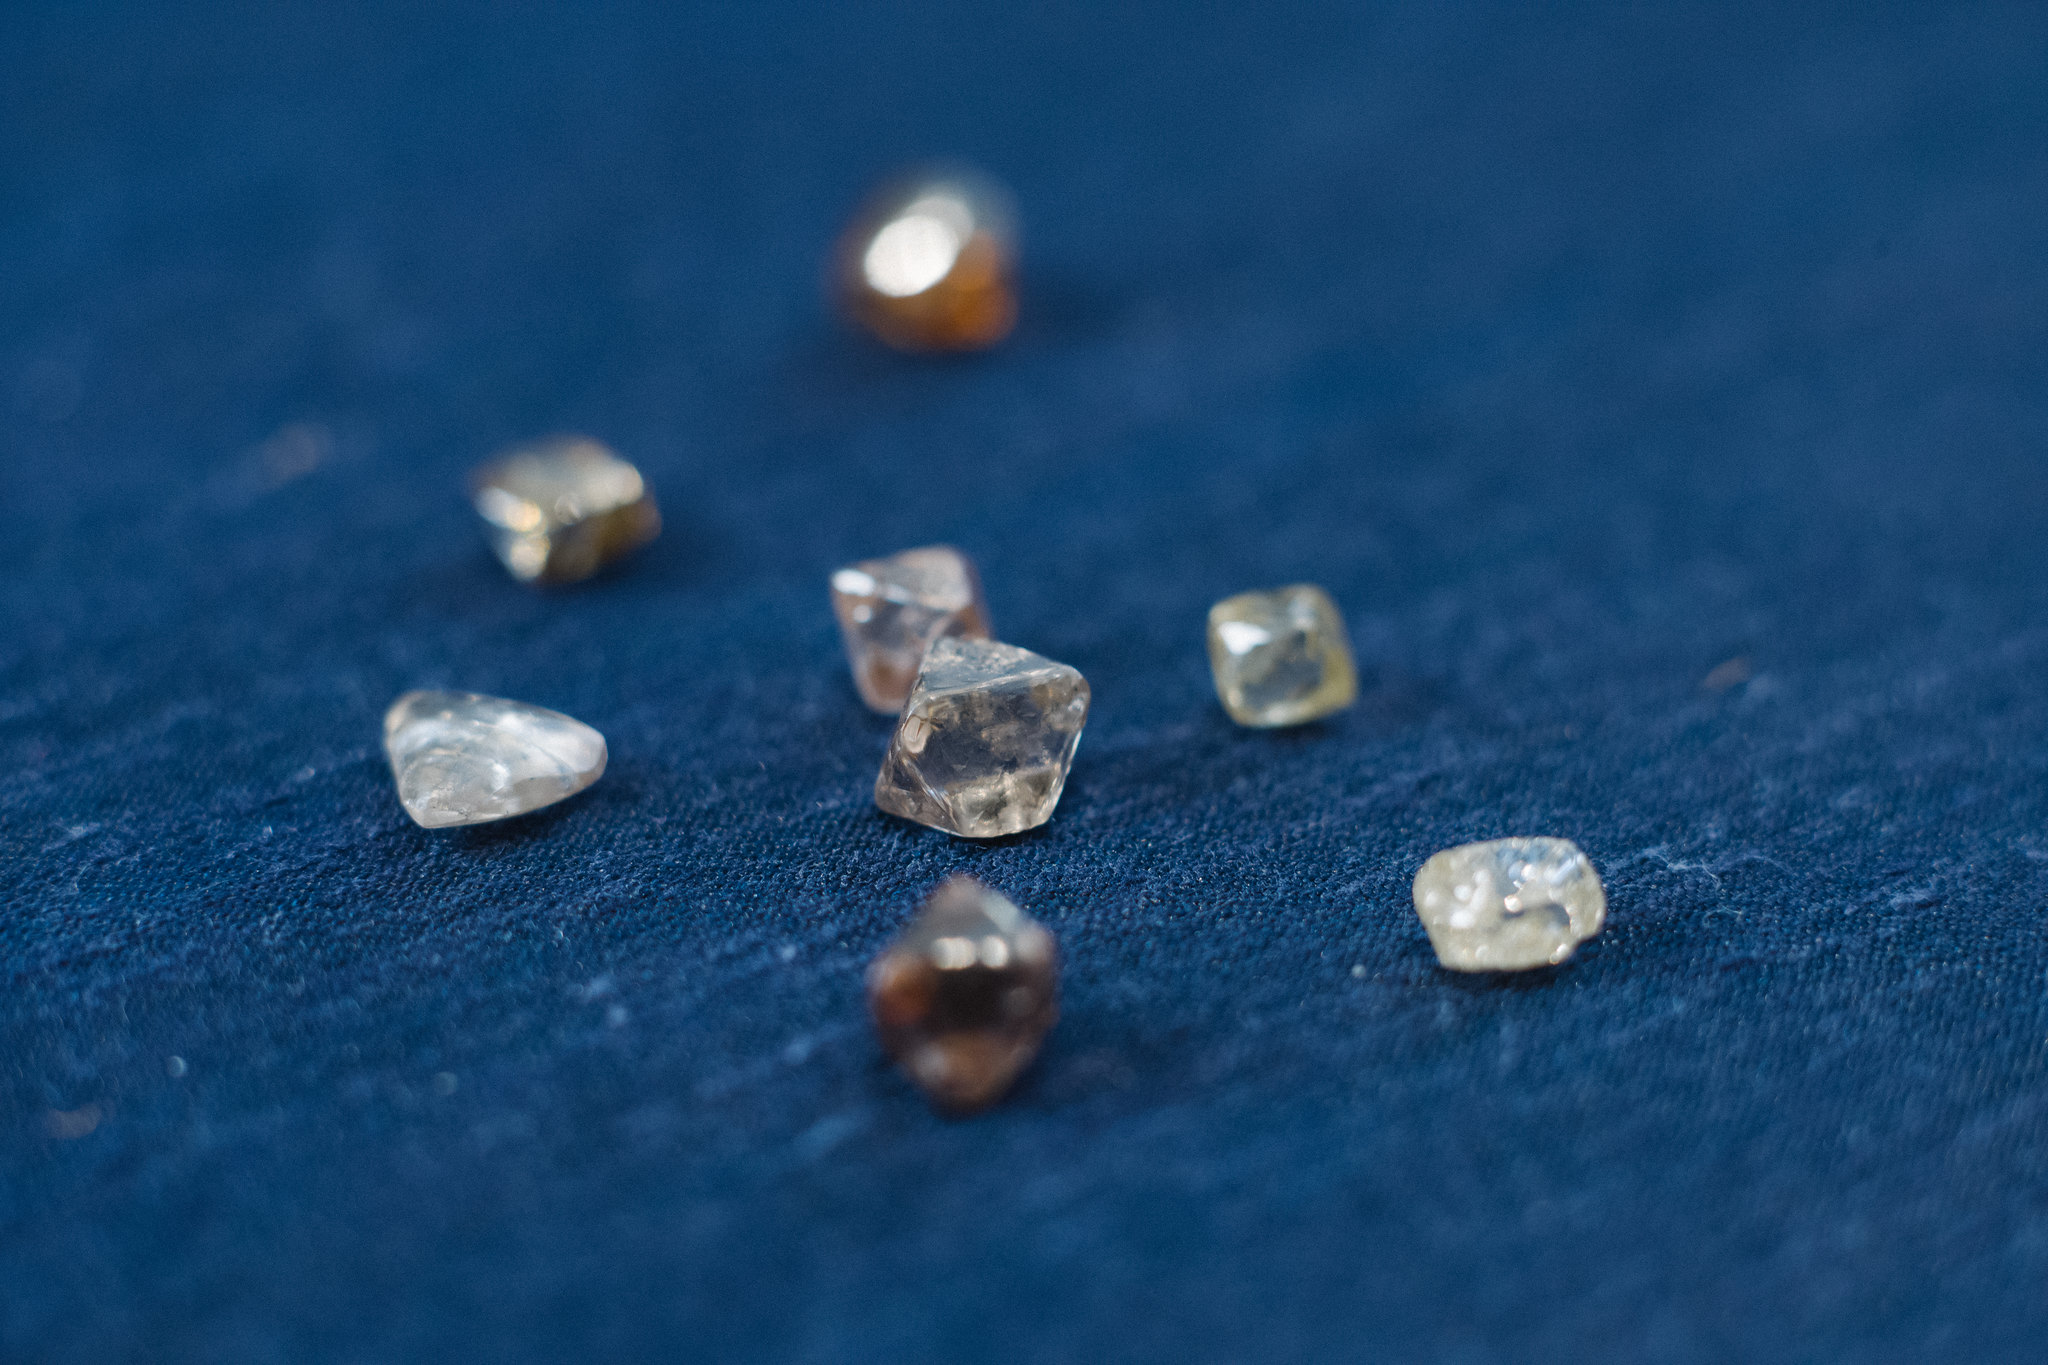 De Beers diamond sales remain rapid - Mining Journal